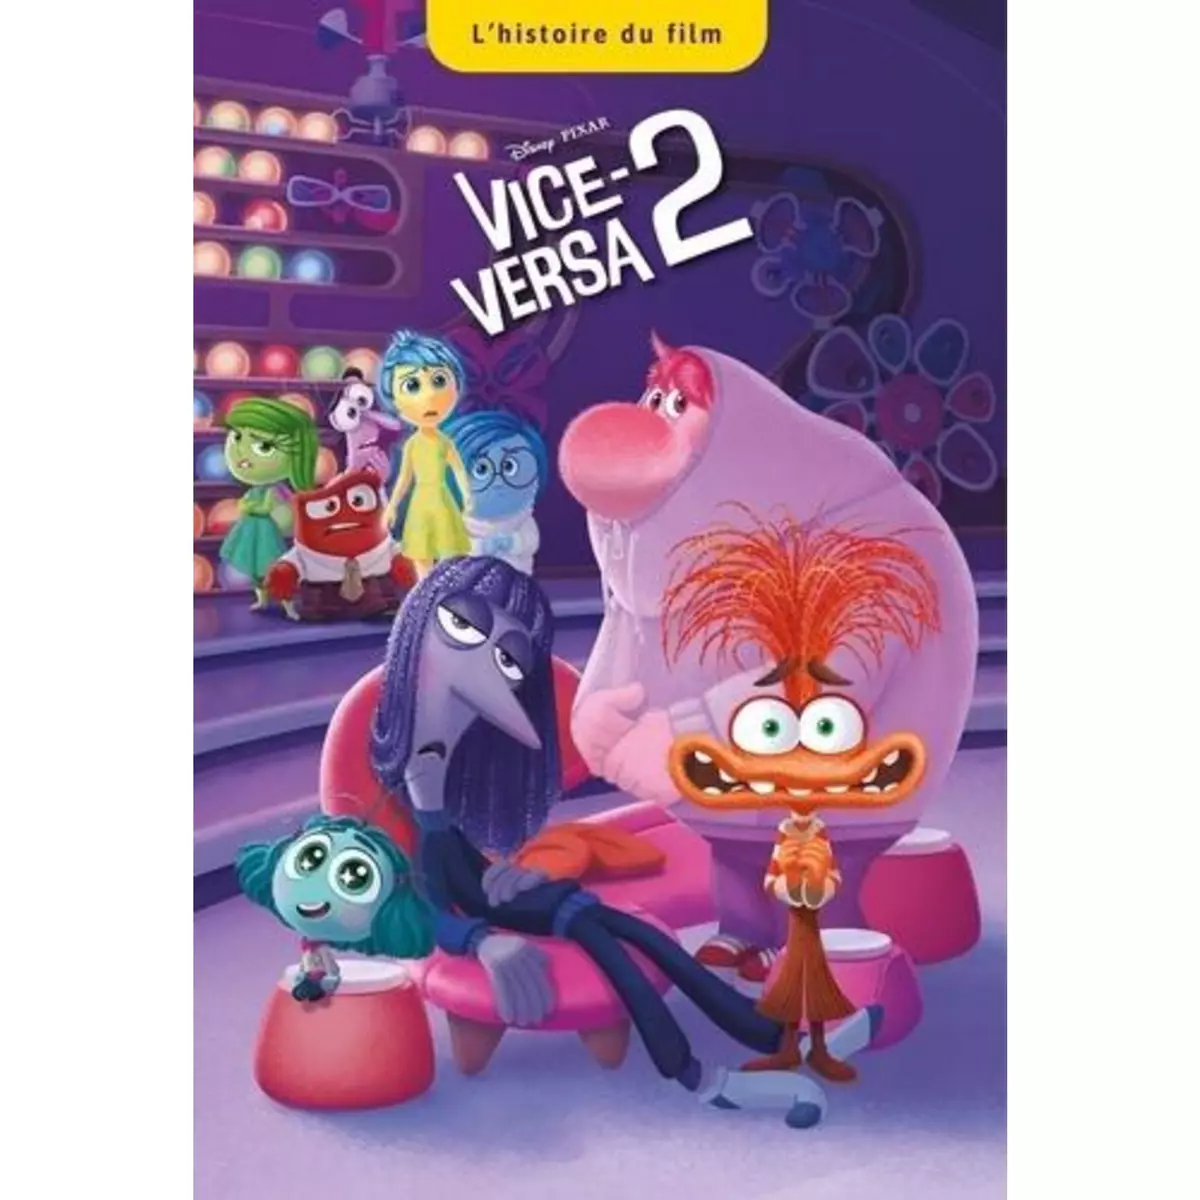  VICE VERSA 2, Disney Pixar